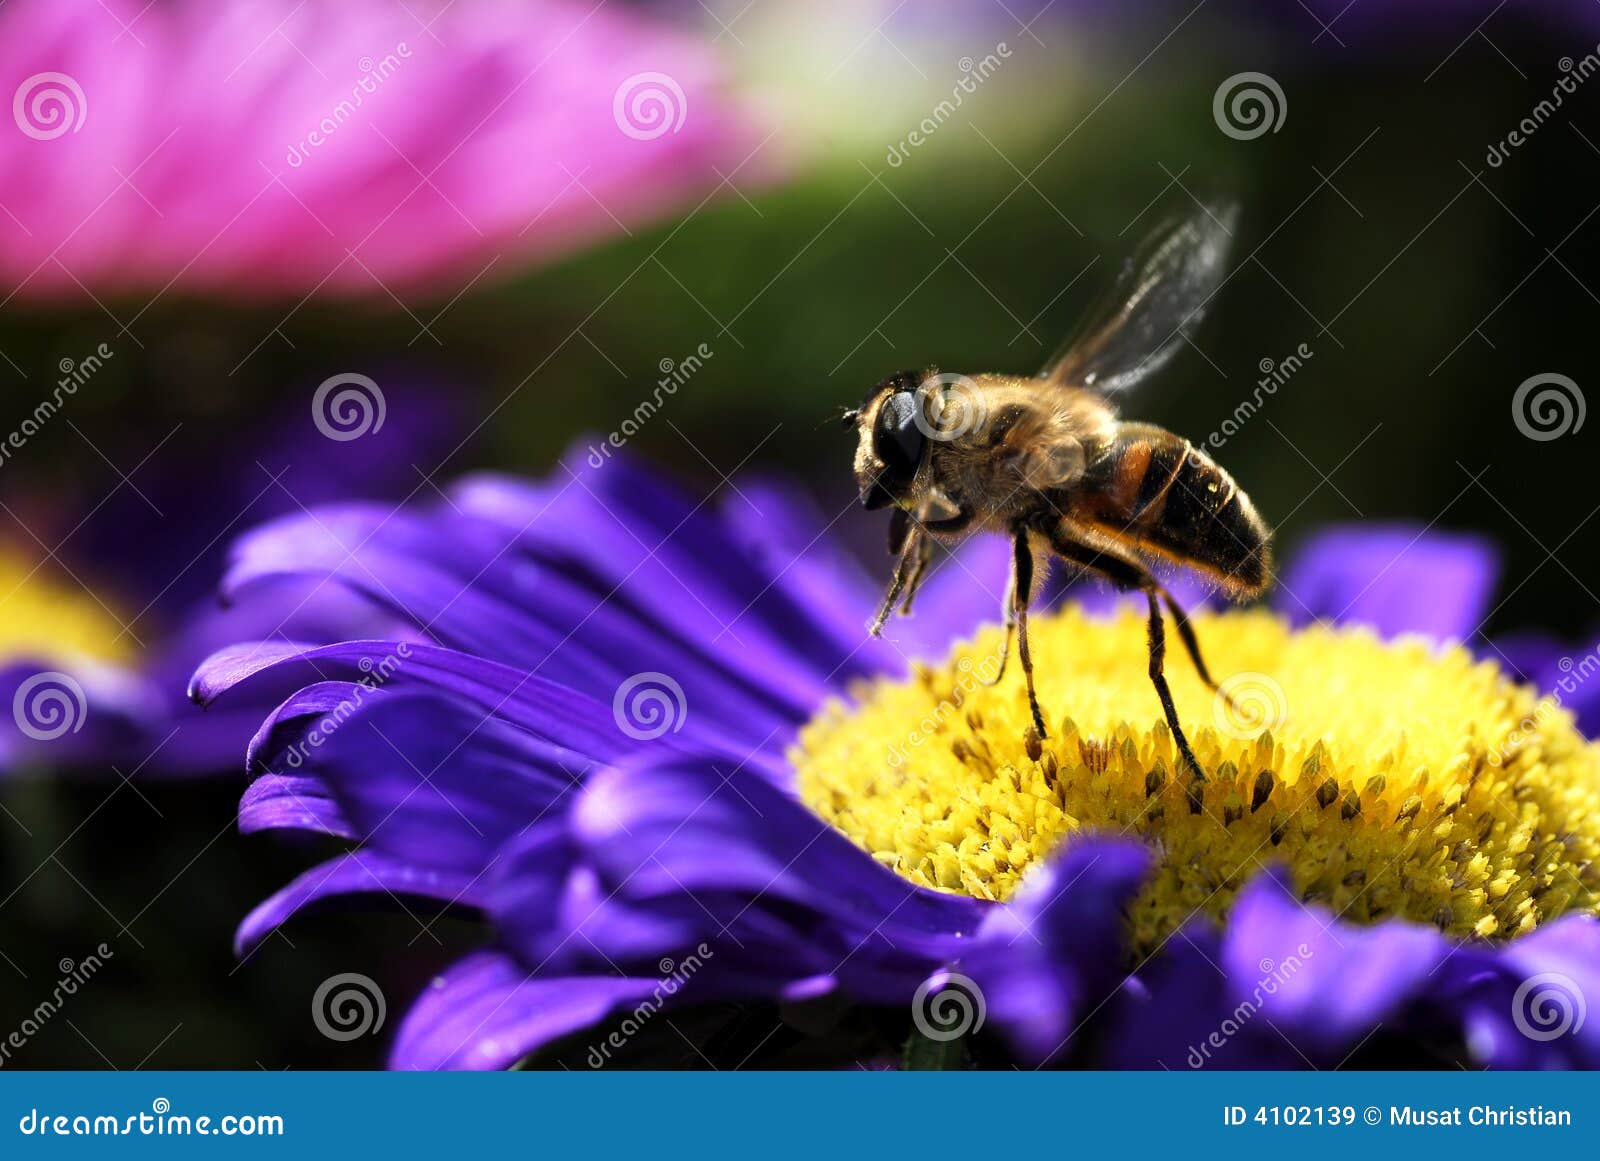 honey bee in flight